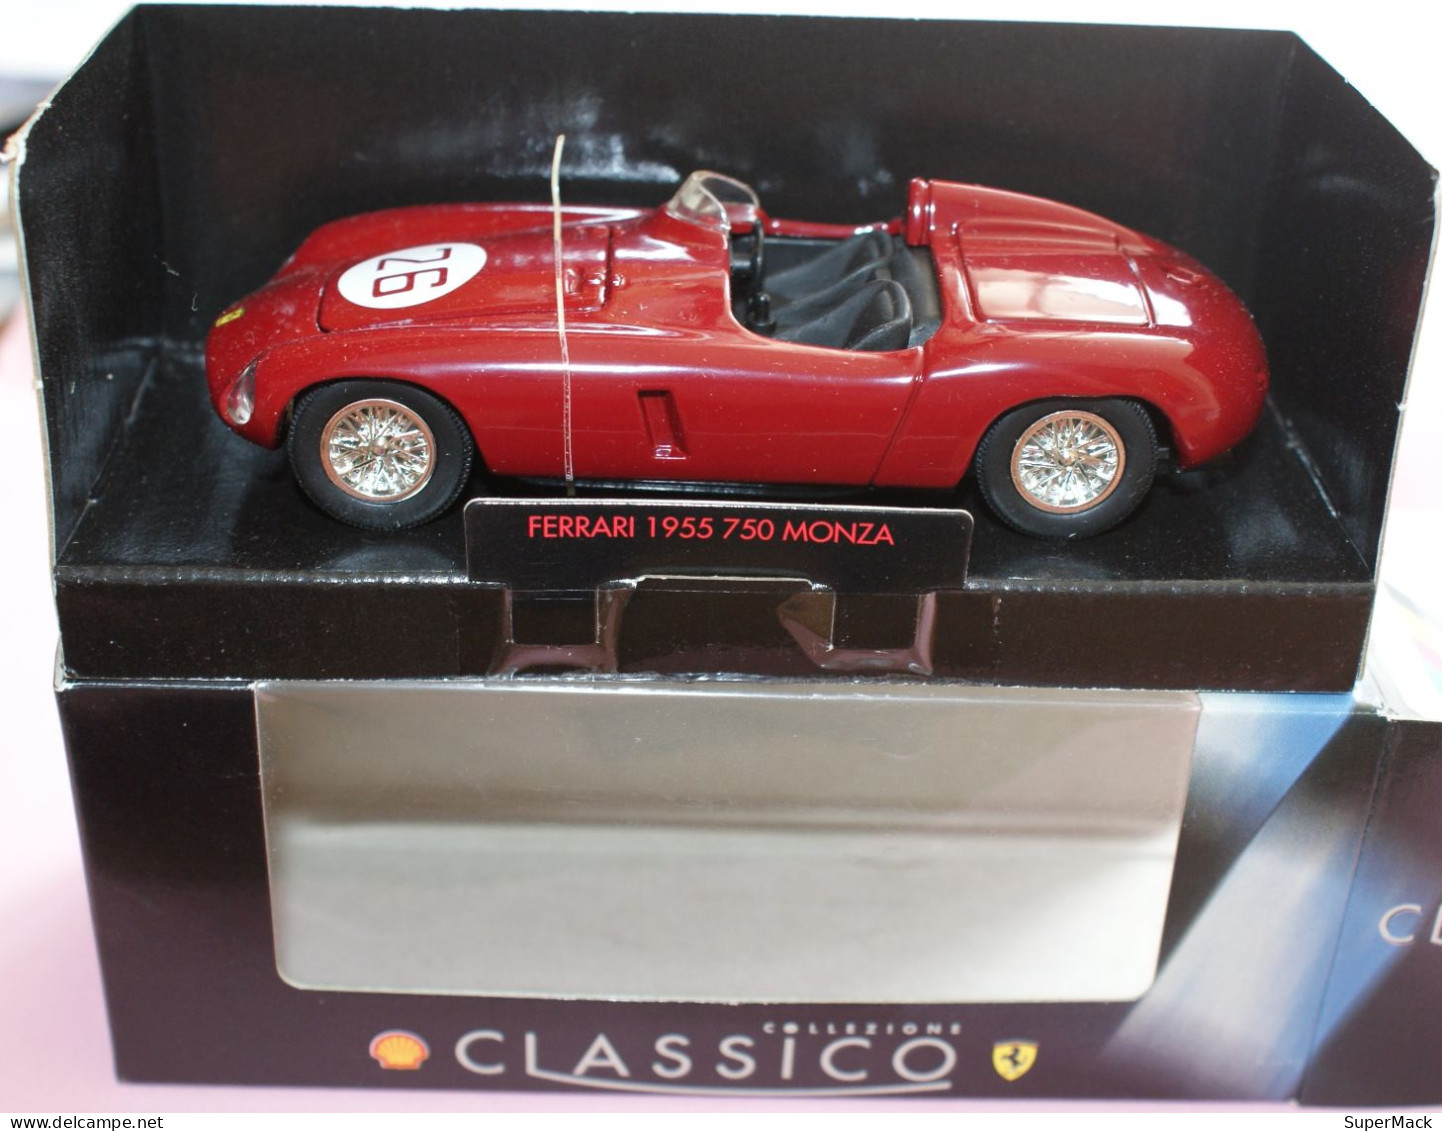 SHELL Classico Collezione - Ferrari 1955 750 MONZA - Echelle 1:35 ### NEUVE+BOX ### - Echelle 1:32